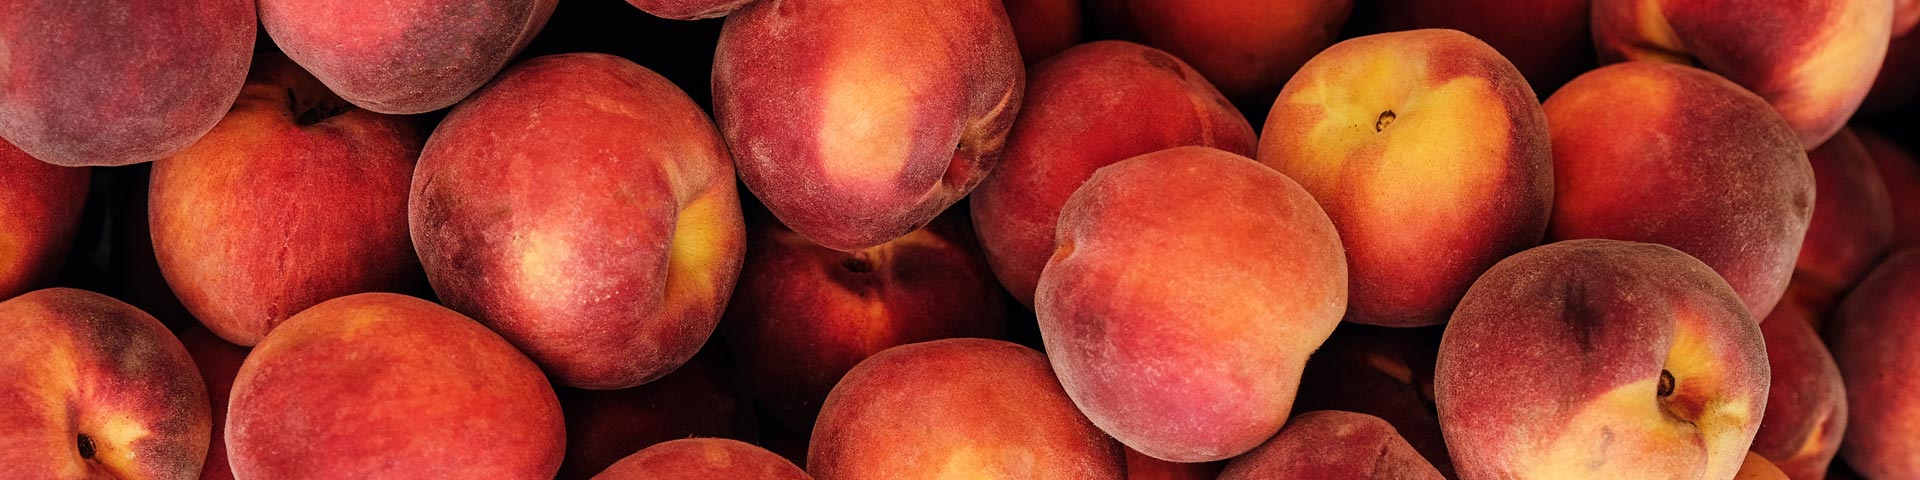 Klicka här för att handla persika och nektarin